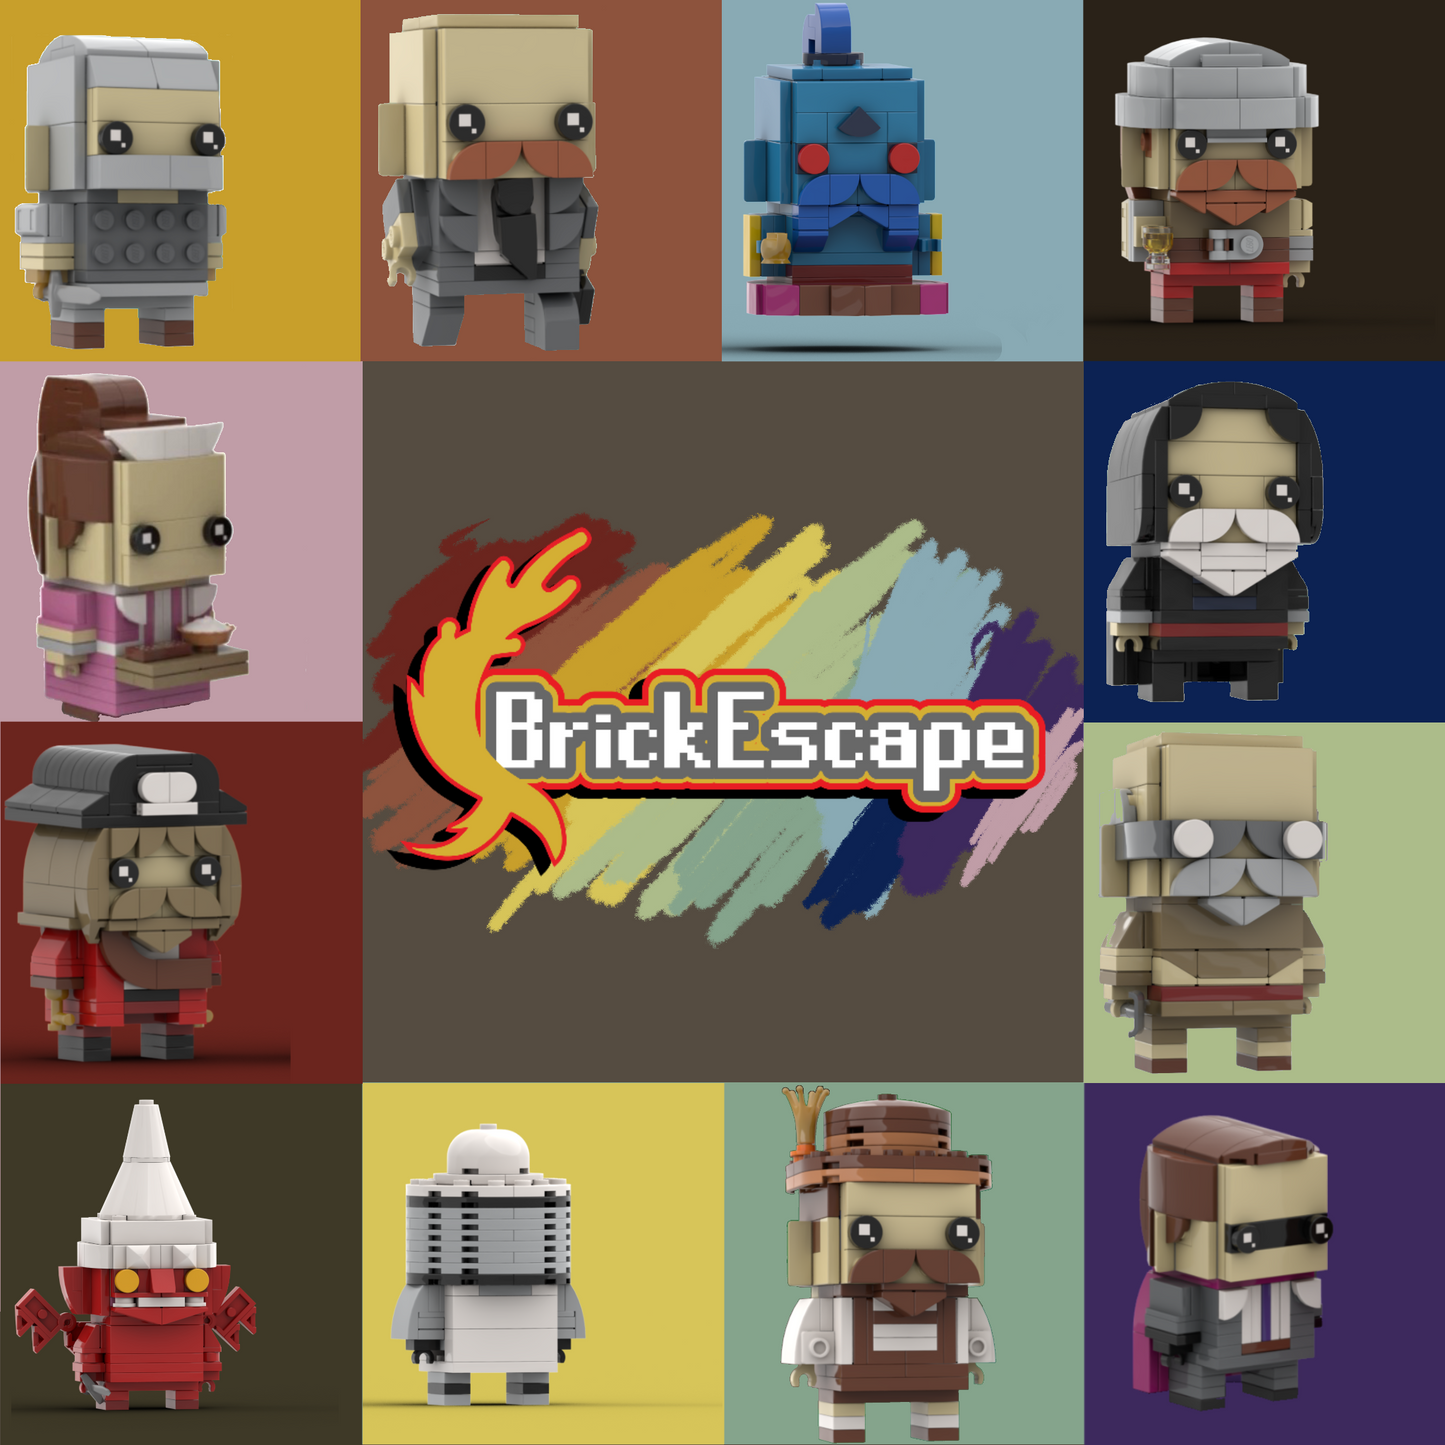 Complete Set: All Random Event NPC Models - Brick Escape